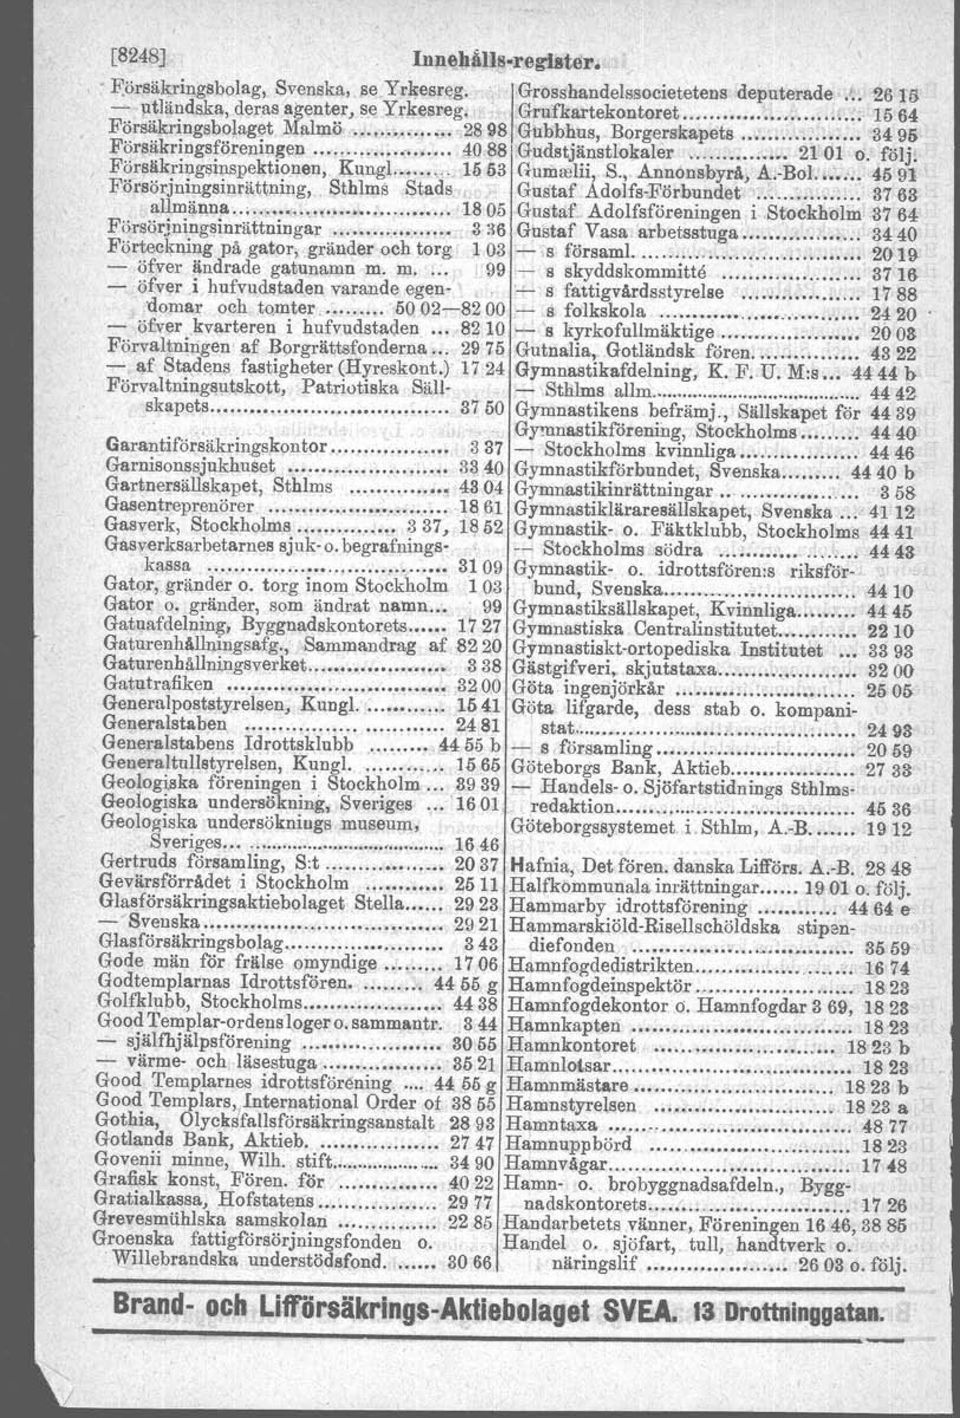 -BoL 4591 Försörjningsiprättning, -Sthlms Stads., Gustaf Adolfs-Förbundet ; 3763 allmänna...., ", 1805 Gustaf..Adolfsföreningen,i Stockholm 3764 Försörjn~ngsinrättningar...... 3'16 Gustaf Vasa arbetsstuga.